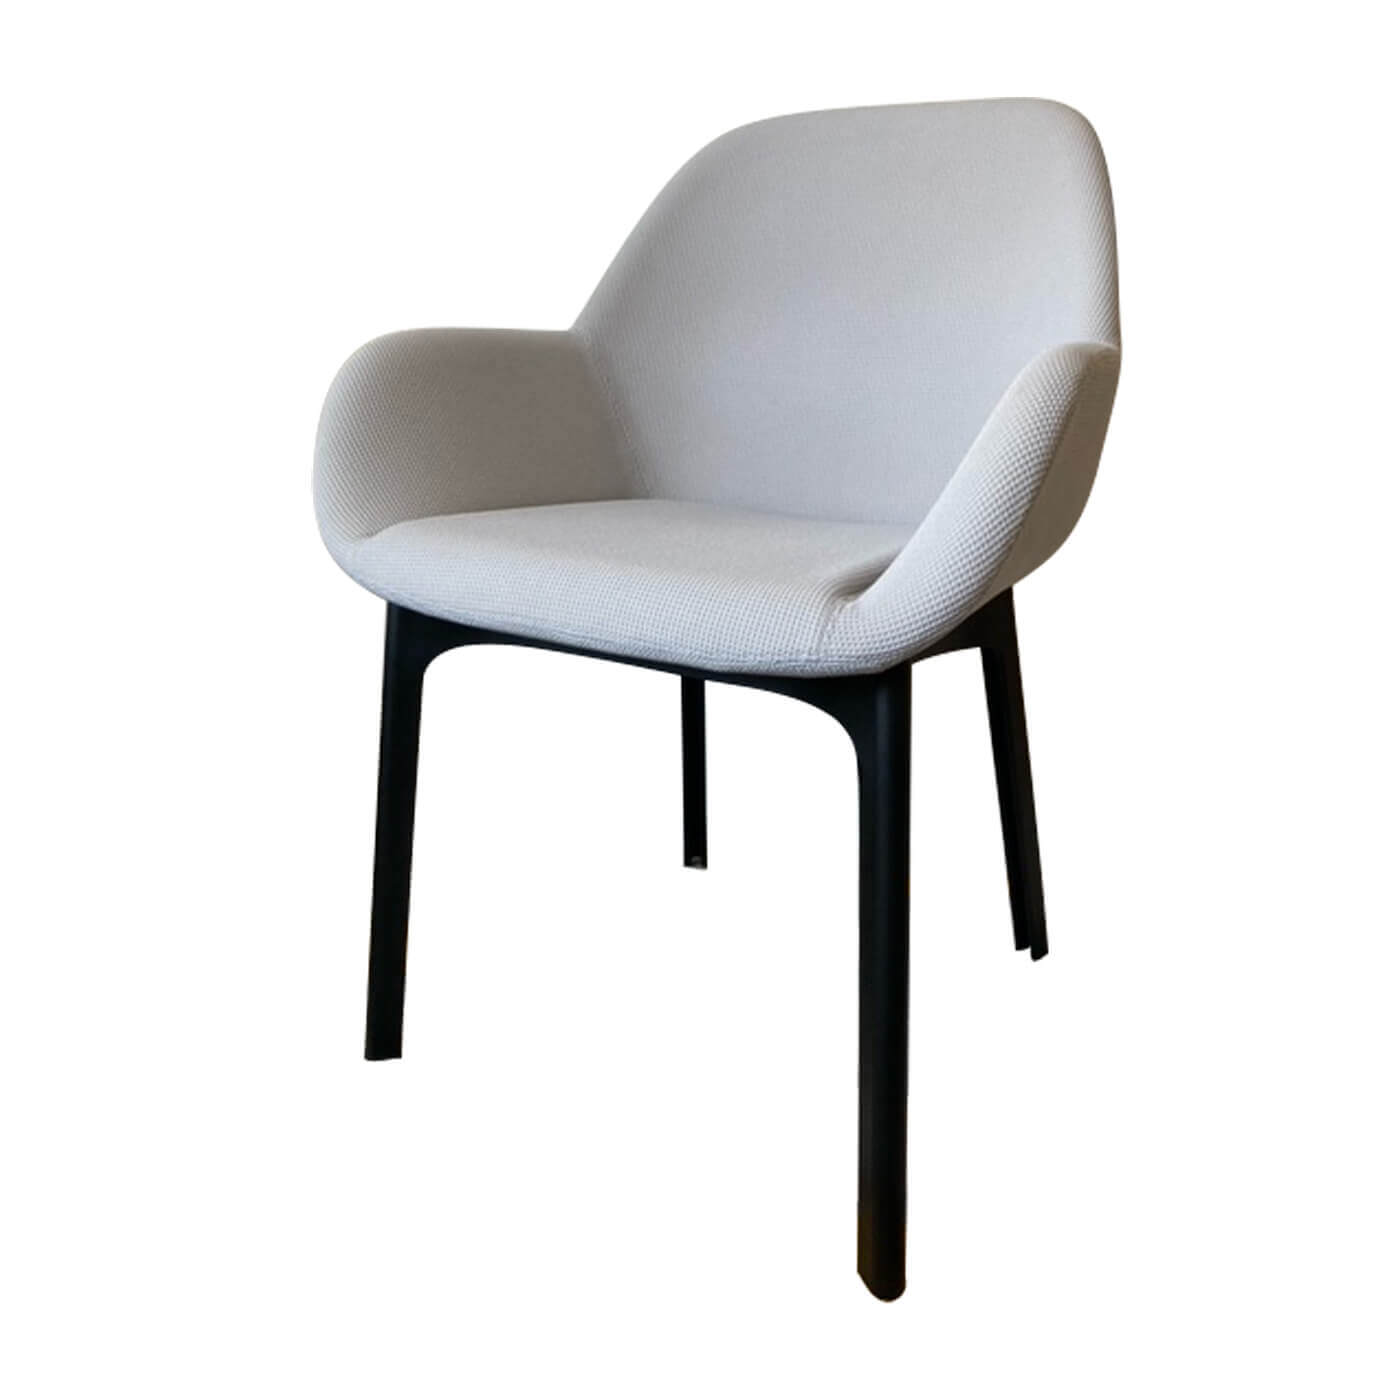 Clap Patricia Urquiola Chair | 3D model